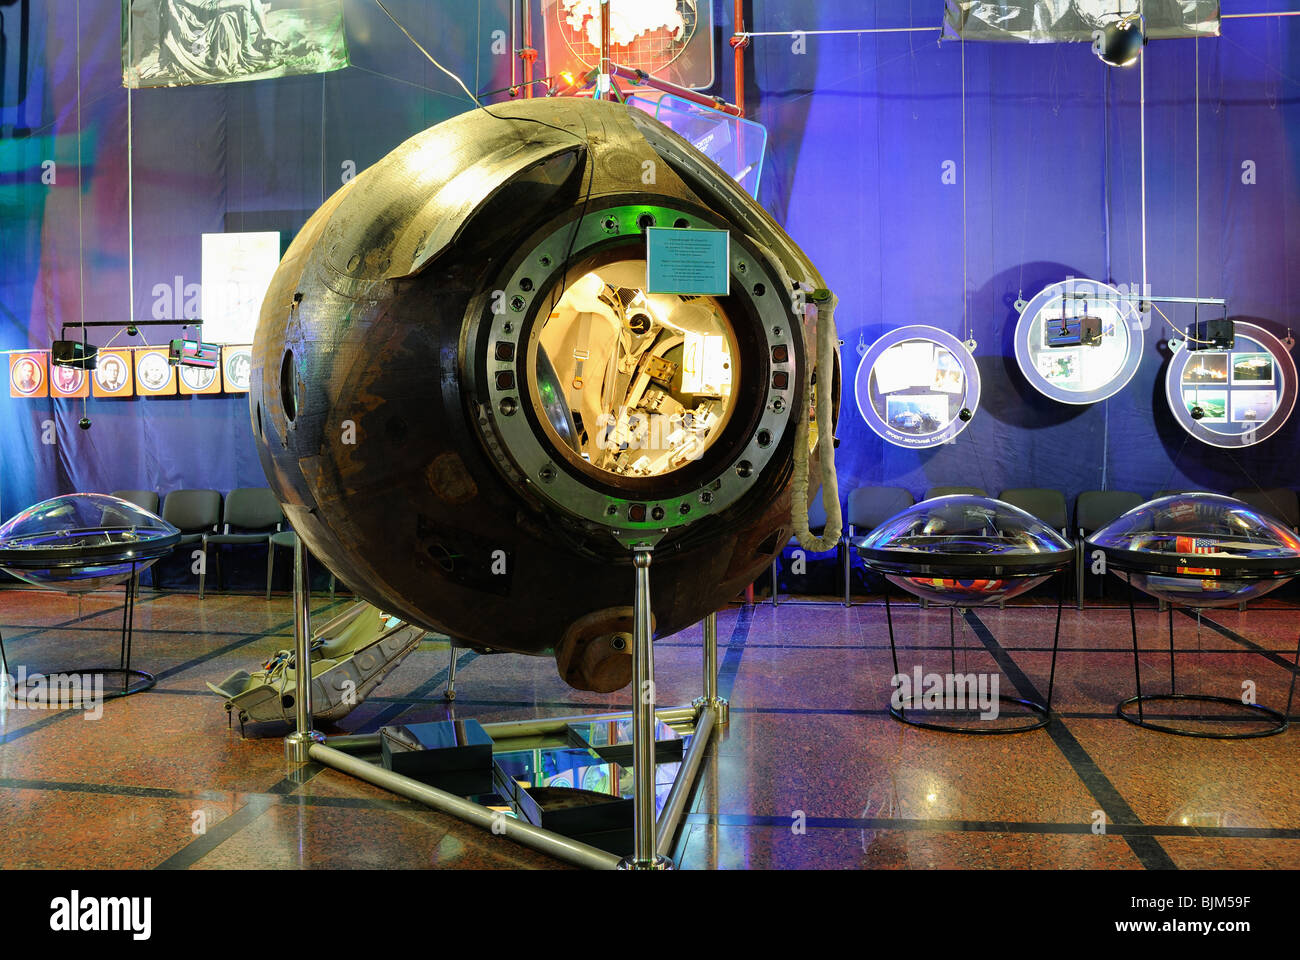 Die Landung Kapsel von Raumschiff "Sojus-27". Sergiy Koroljow Raumfahrt Museum in Schytomyr. Stockfoto